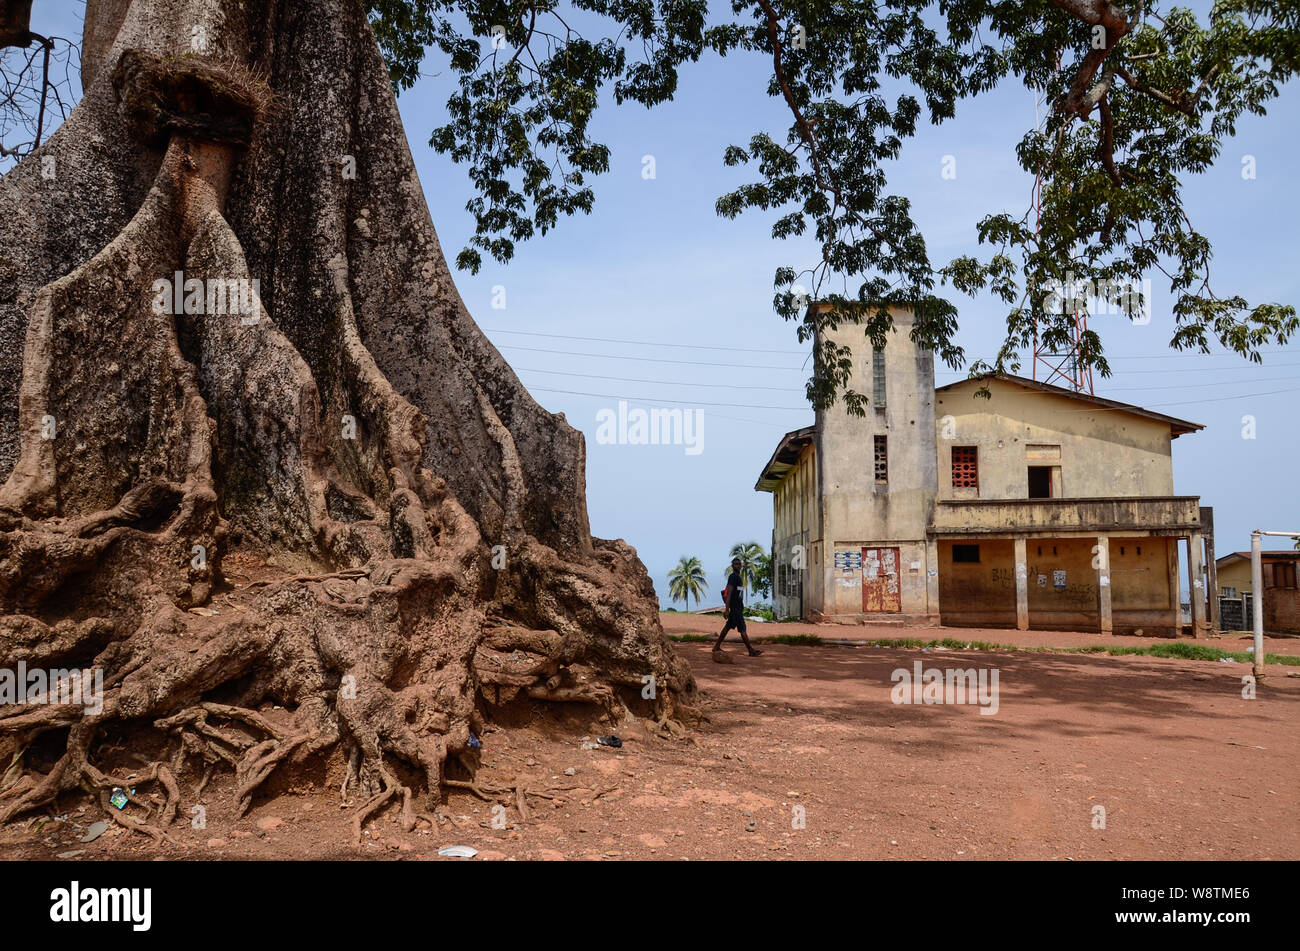 Twin cotton trees in Wilberforce, Freetown, Sierra Leone in 2014 Stock Photo